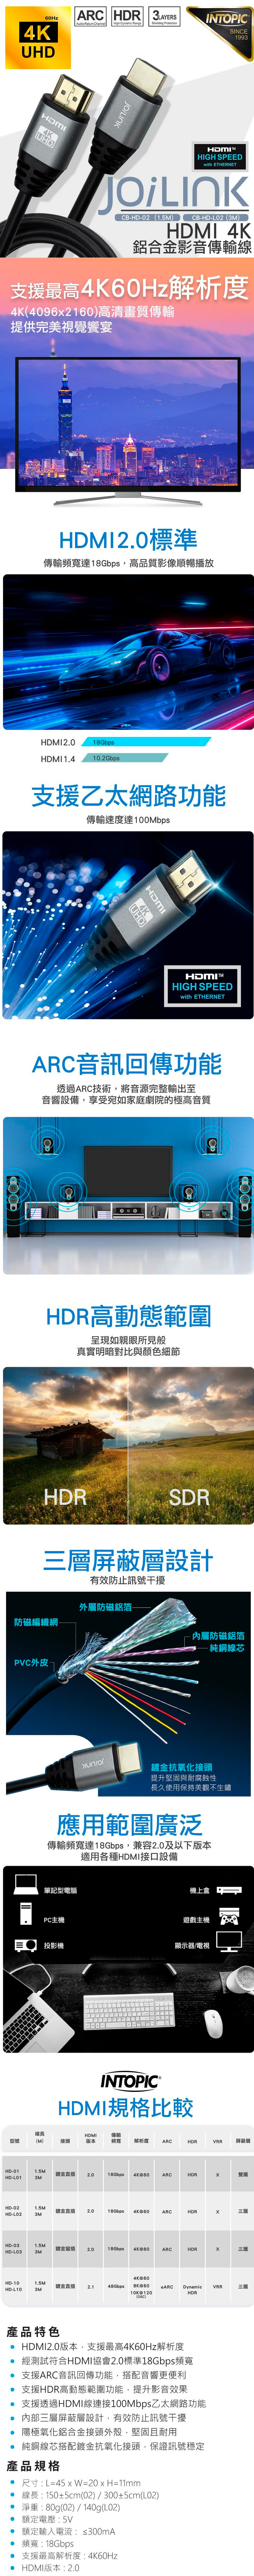 鋁合金 傳輸線 HDMI INTOPIC HDMI 鋁合金